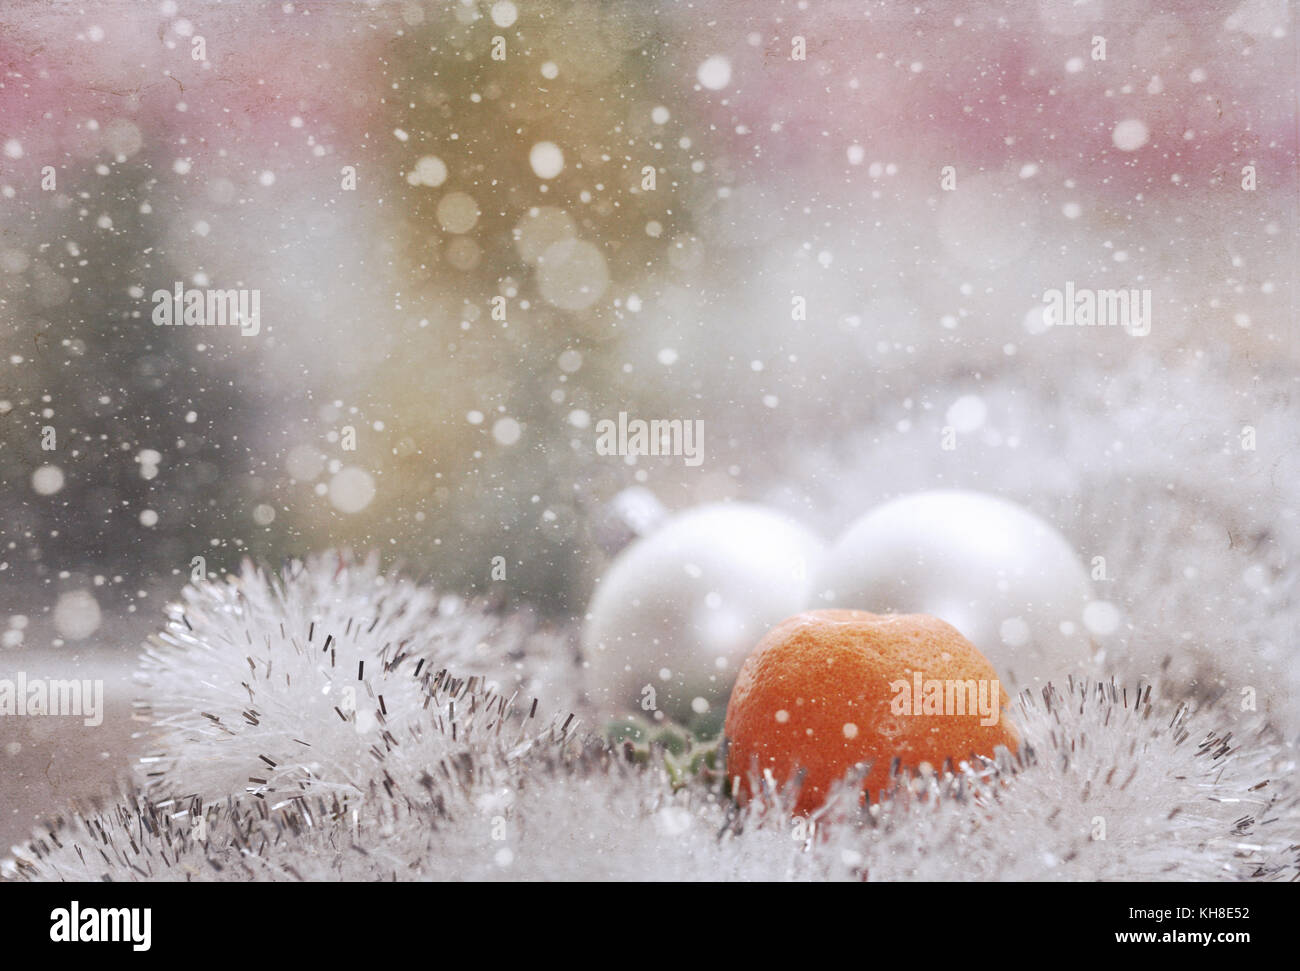 Décoration de Noël, boules blanches, mandarine, neige/œuvres d'art de style vintage Banque D'Images